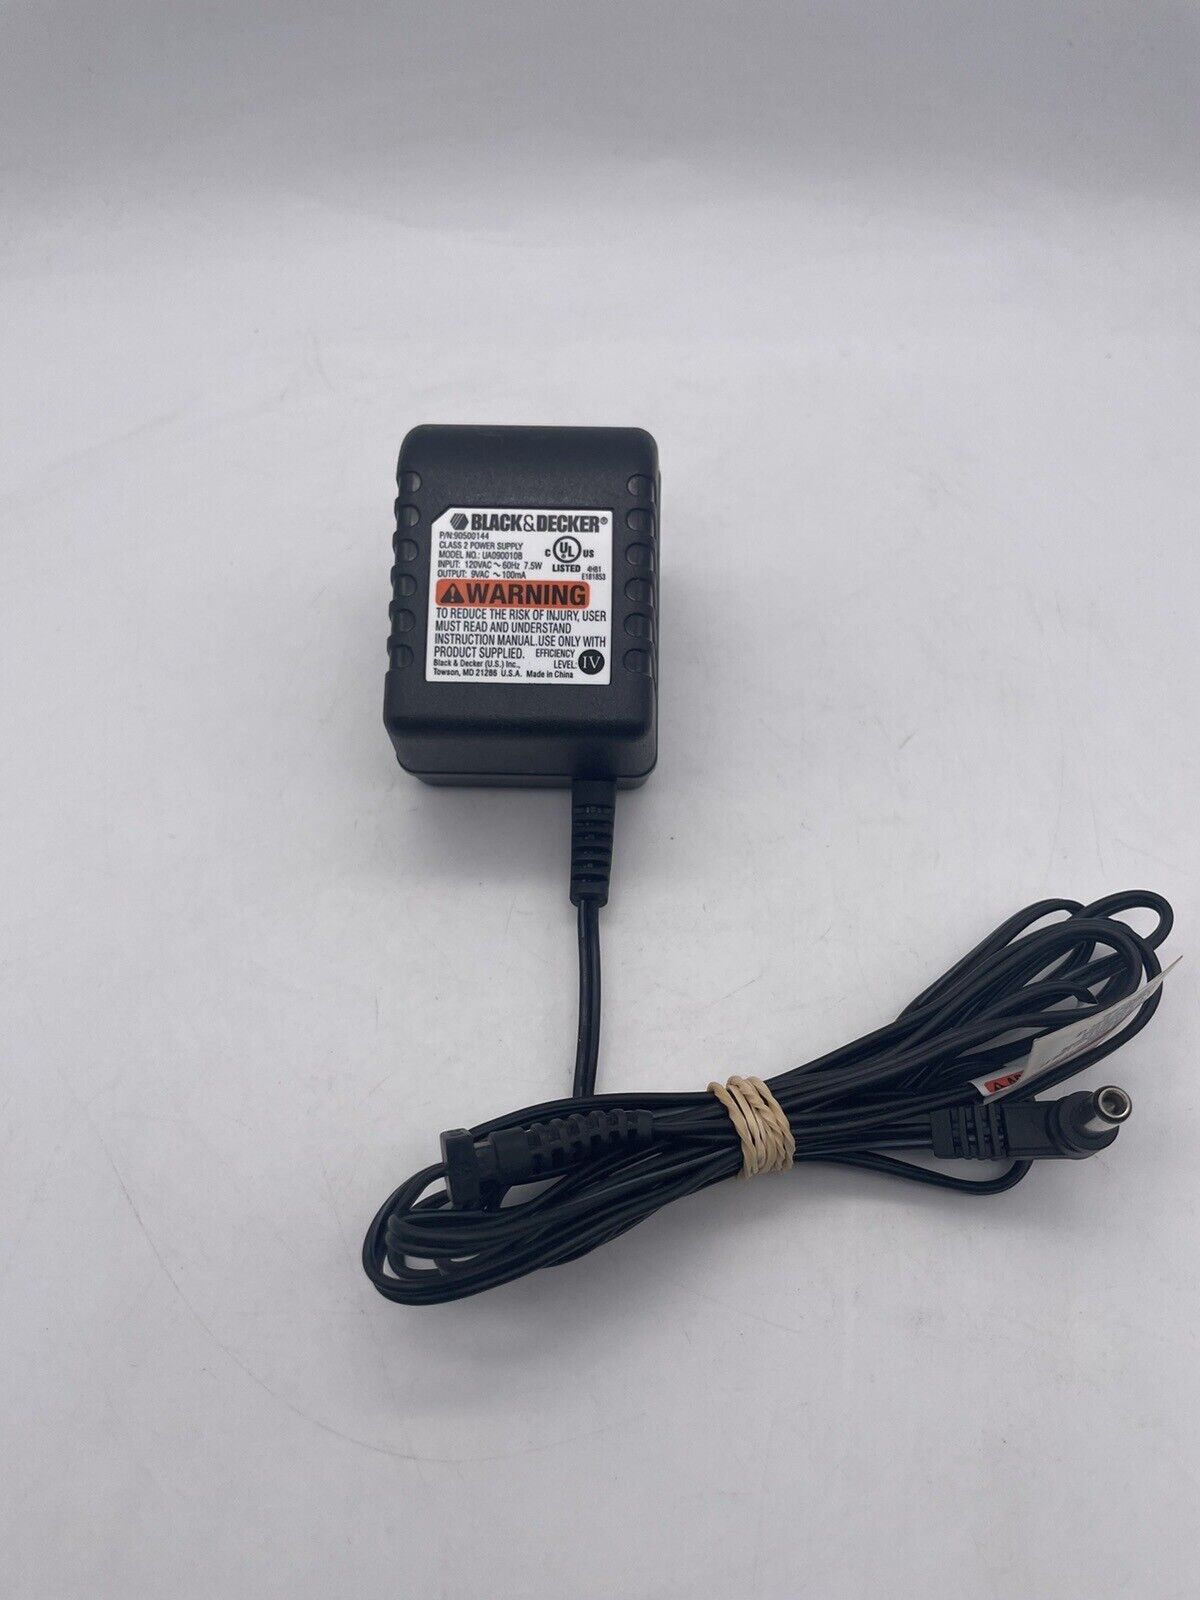 Genuine Black & Decker 9V AC-AC Adapter UA-0900108 UA-090010B 90500144 Charger